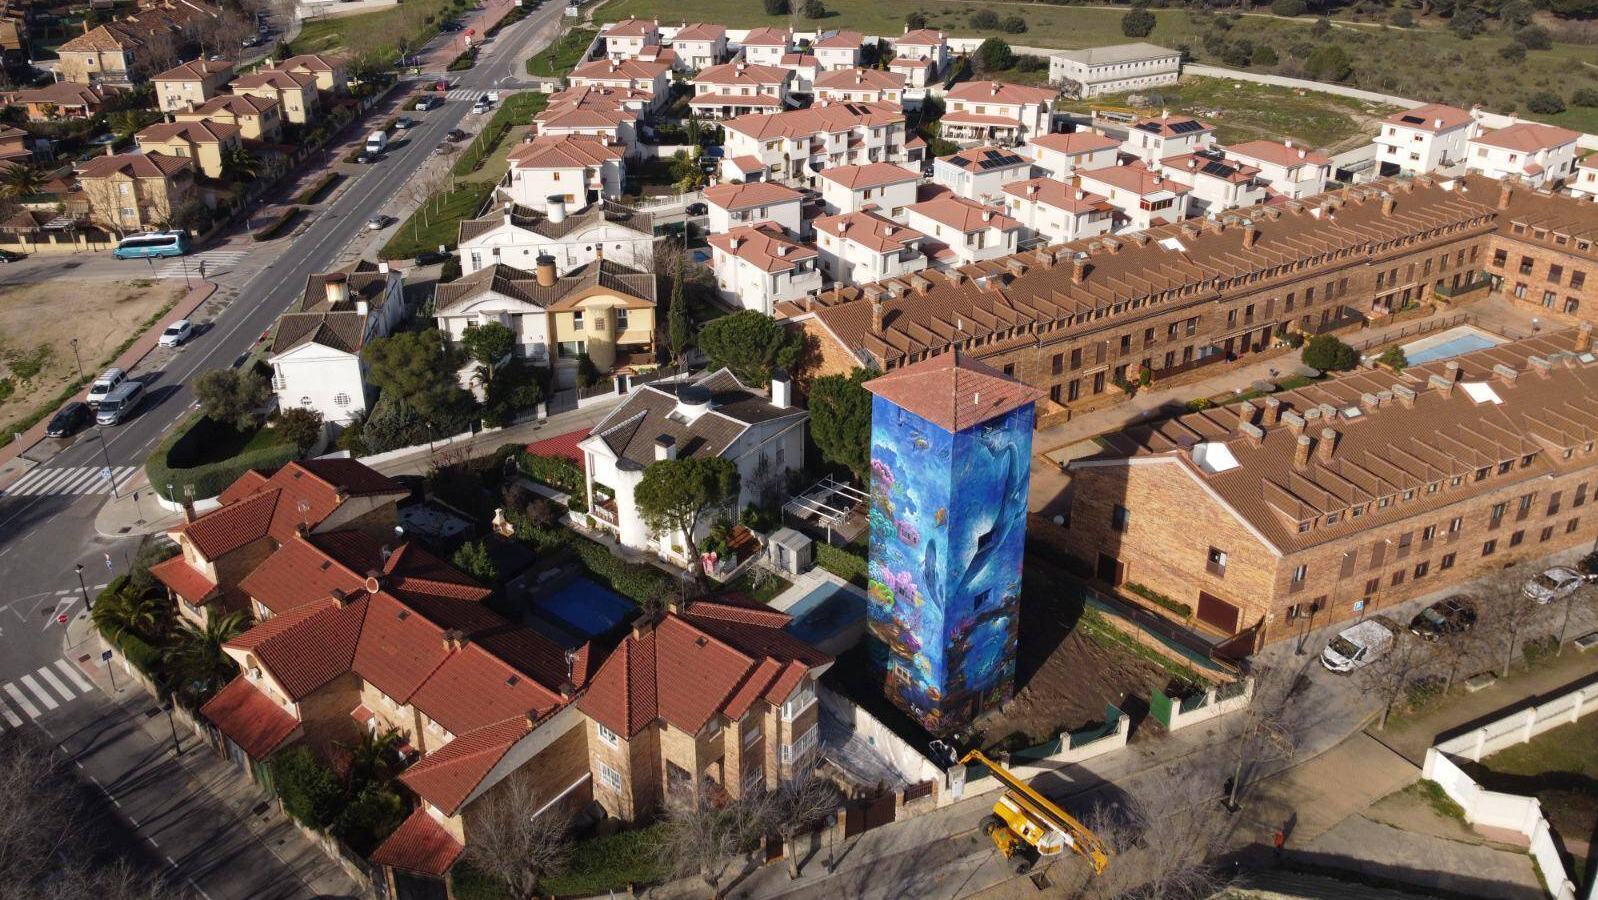 Sevilla la Nueva suma a su skyline un mural de 20 metros de altura